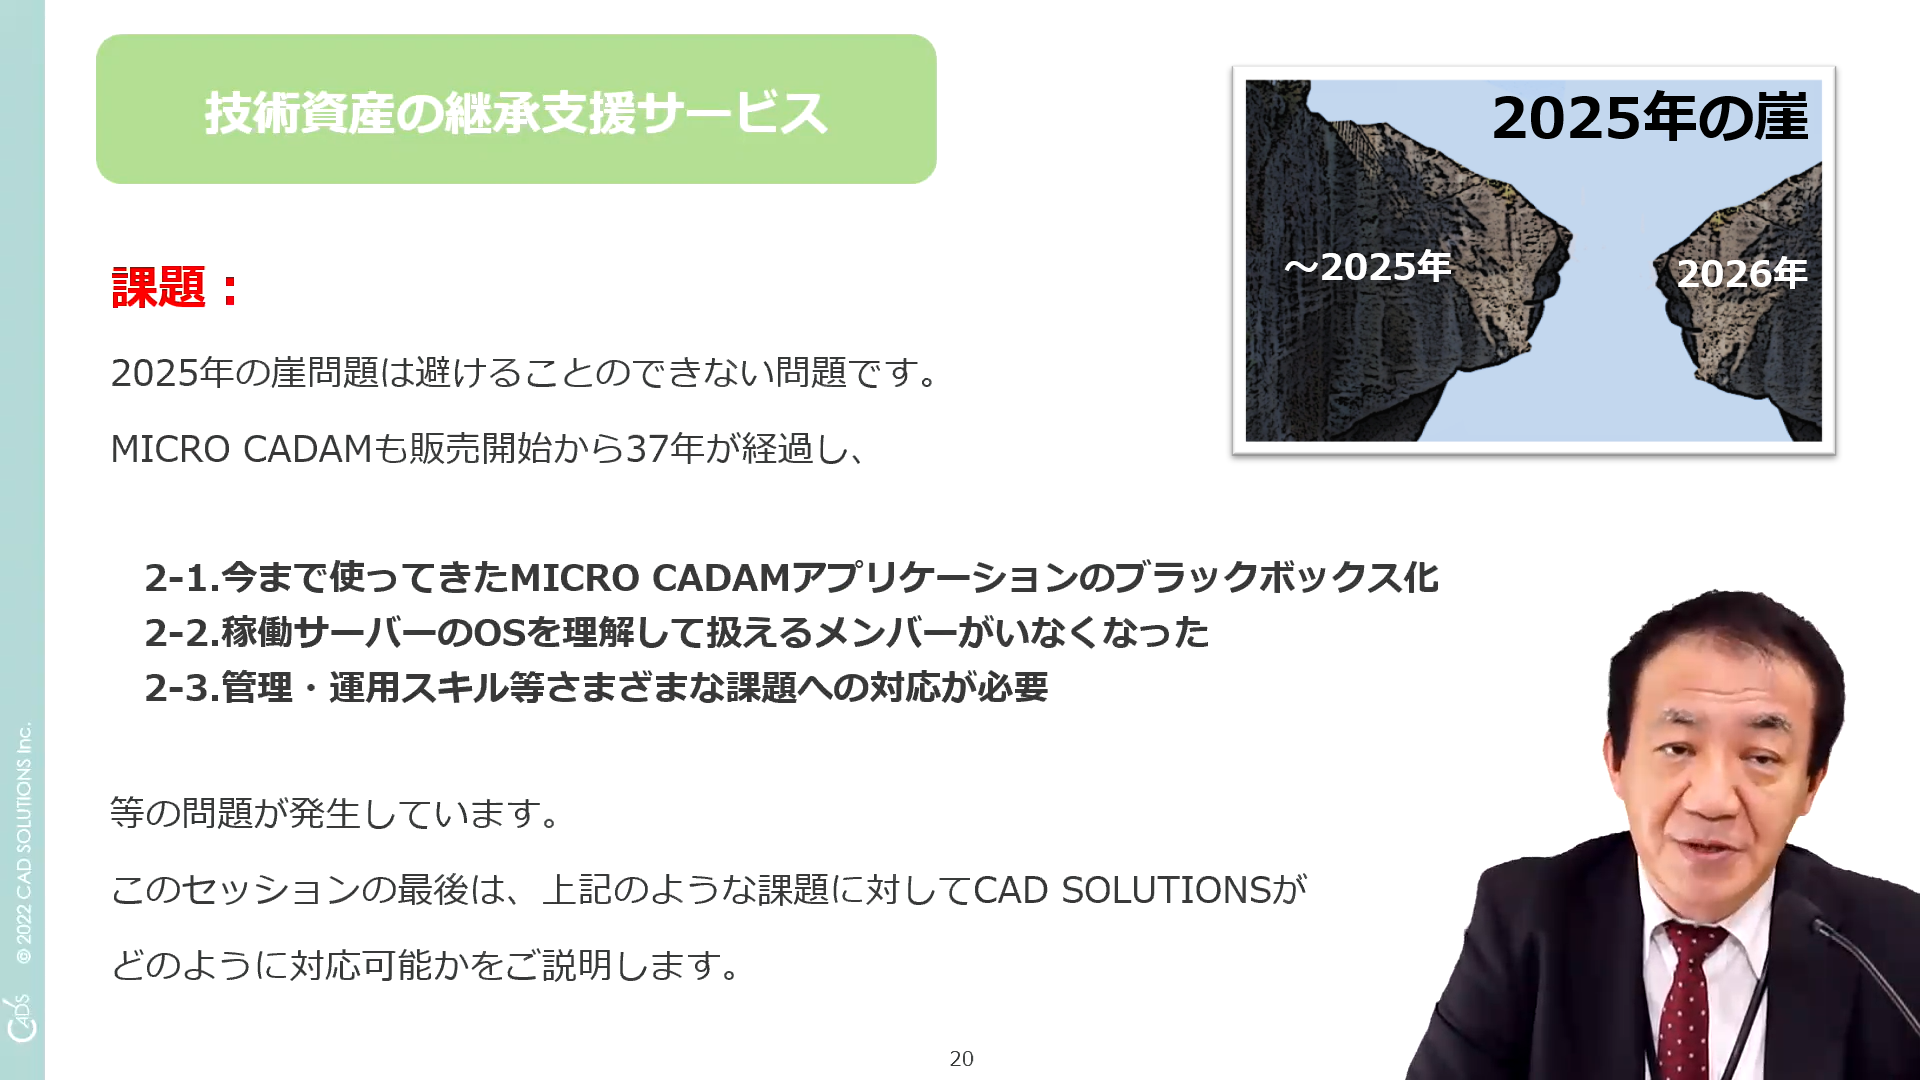 イメージ:MICRO CADAMの利用効果を拡張するCAD’S提供ソリューション群